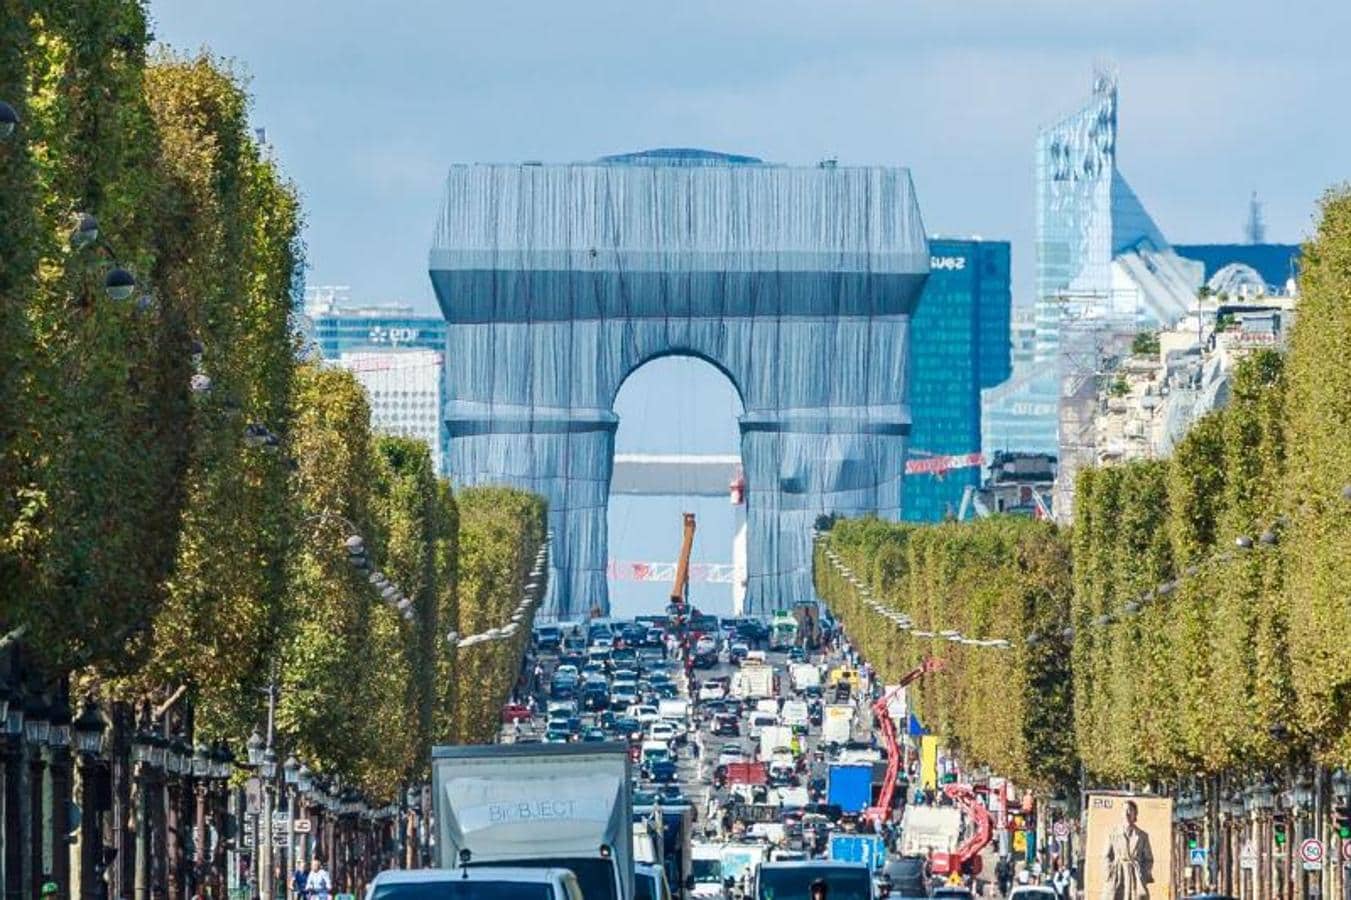 Así, el Arco del Triunfo, de 50 metros de altura, se ha transformado por completo en un gigantesco paquete de regalo, sujeto por 3.000 metros de cuerda roja. 